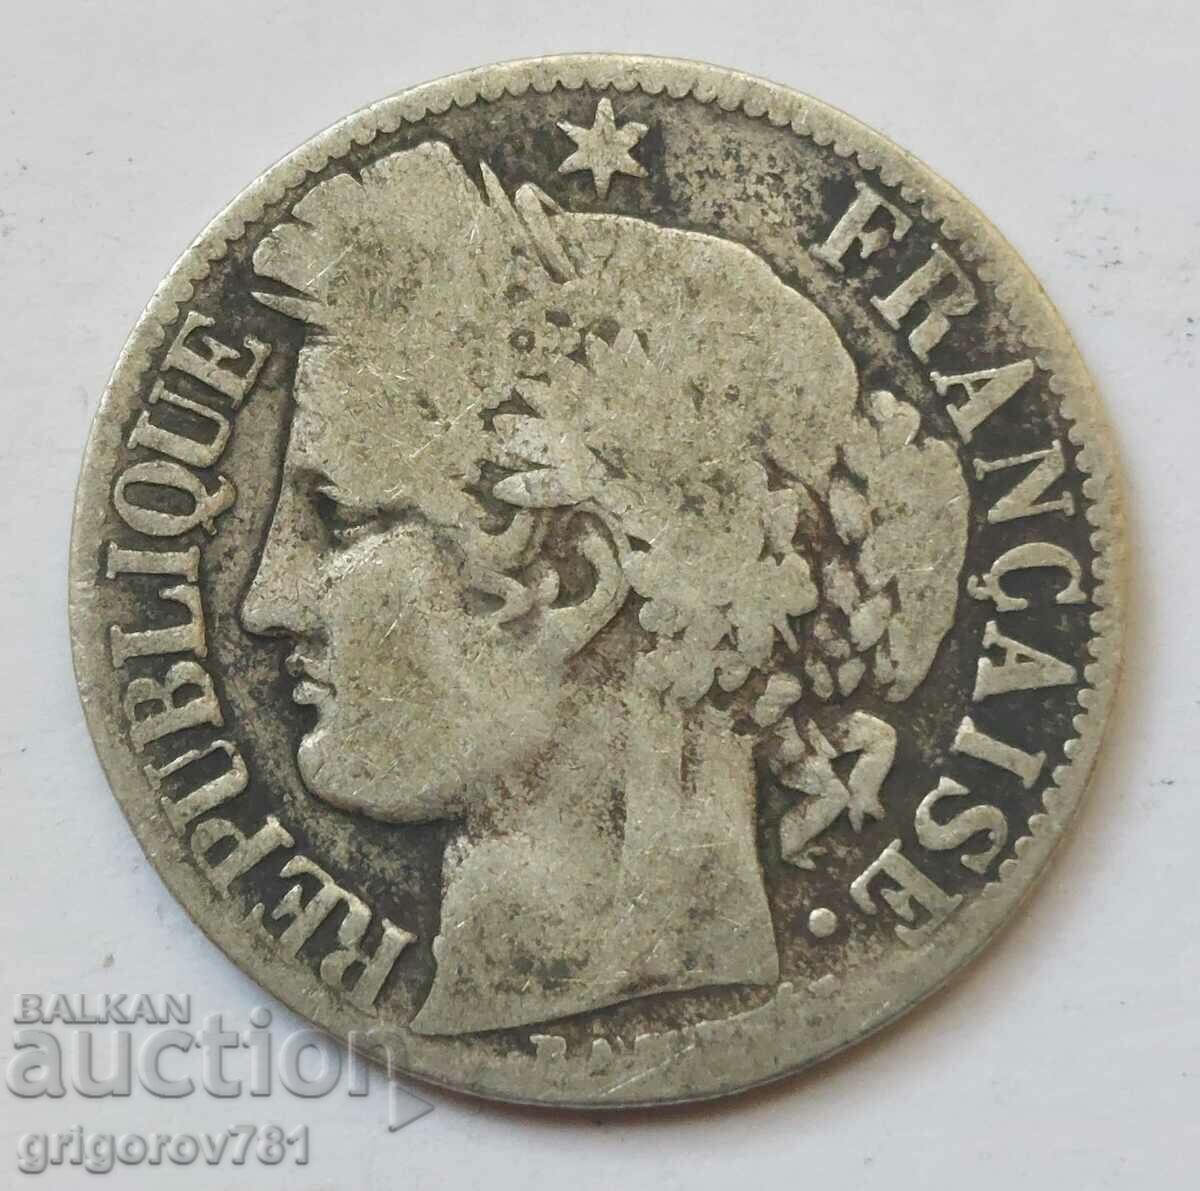 Ασήμι 1 φράγκου Γαλλία 1872 K - Ασημένιο νόμισμα #54